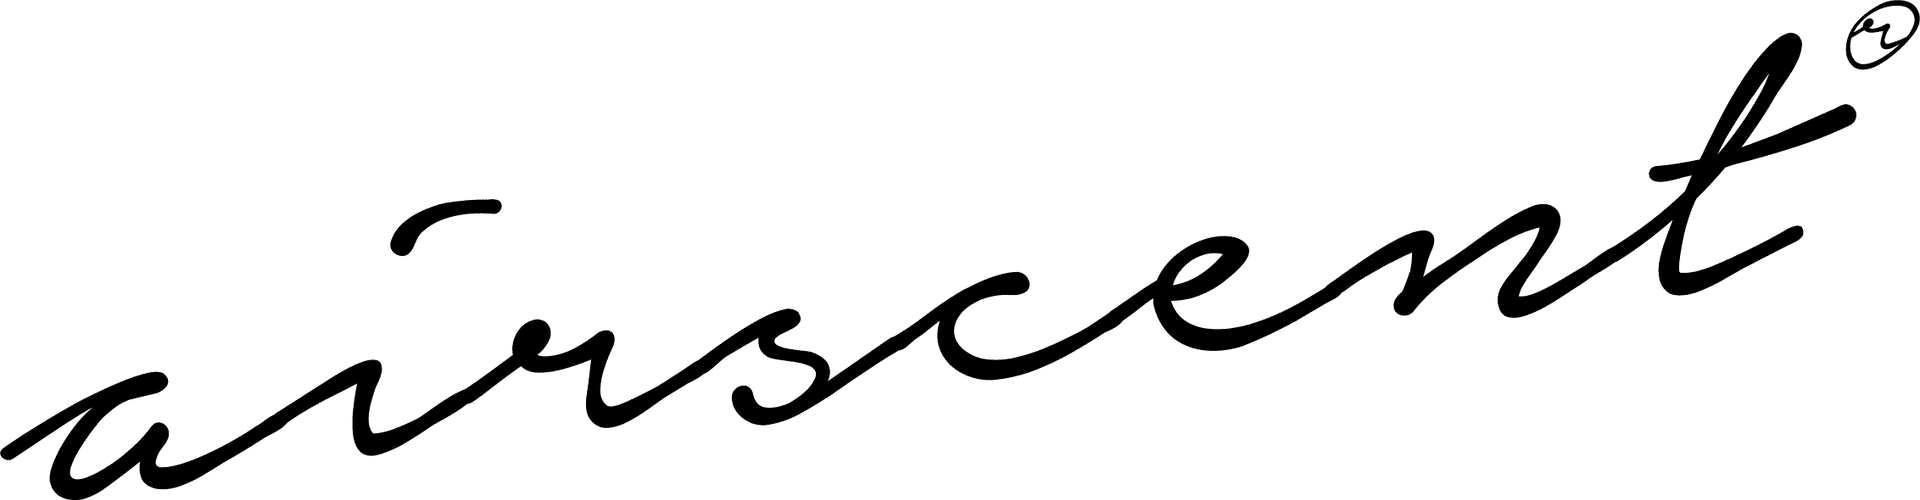 AirScent Diffuser logo script